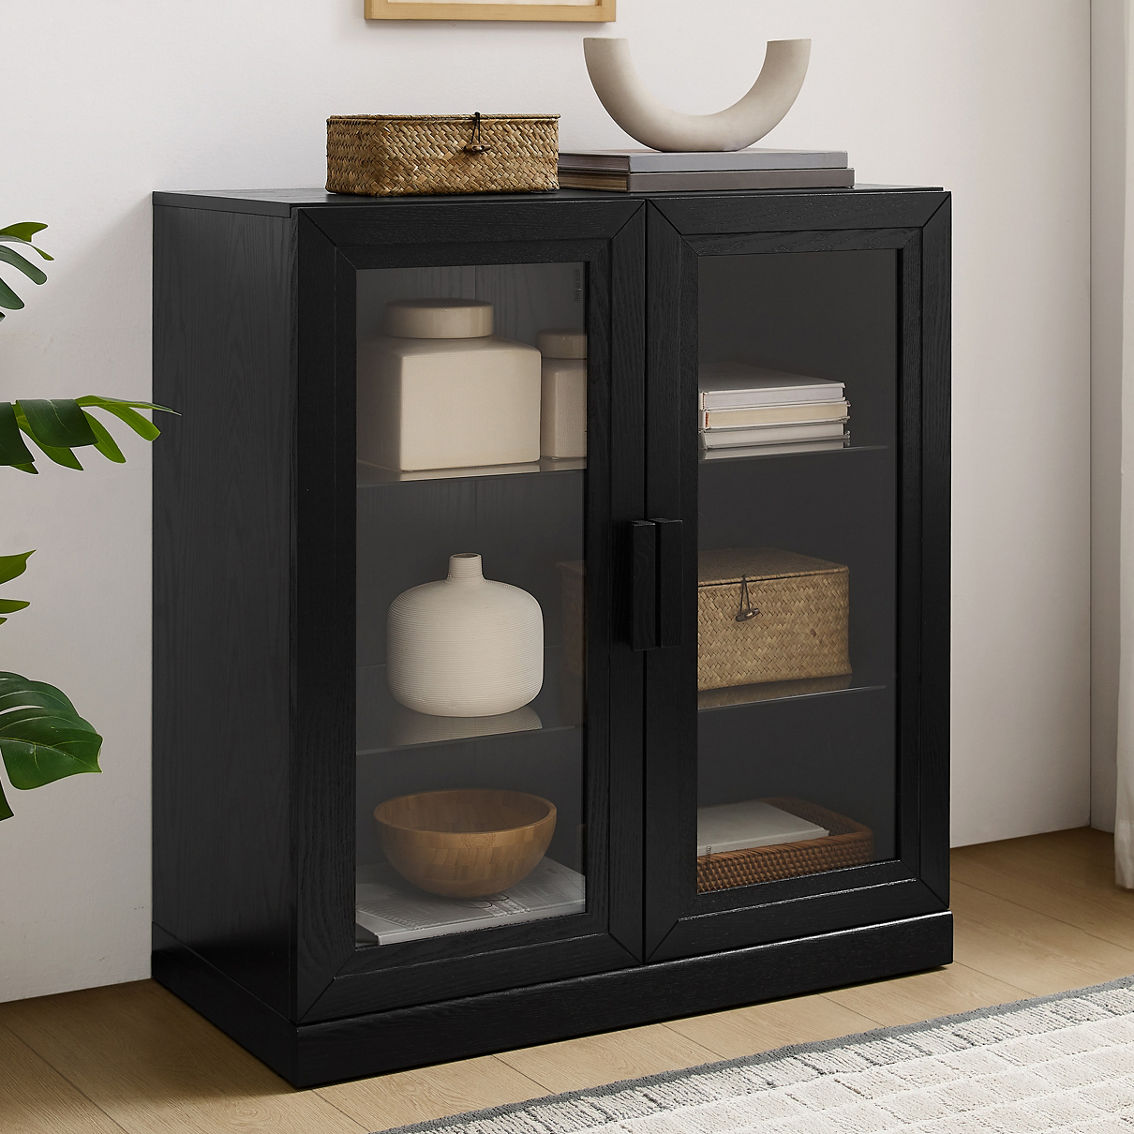 Crosley Furniture Essen Stackable Glass Door Kitchen Pantry Storage Cabinet - Image 5 of 7